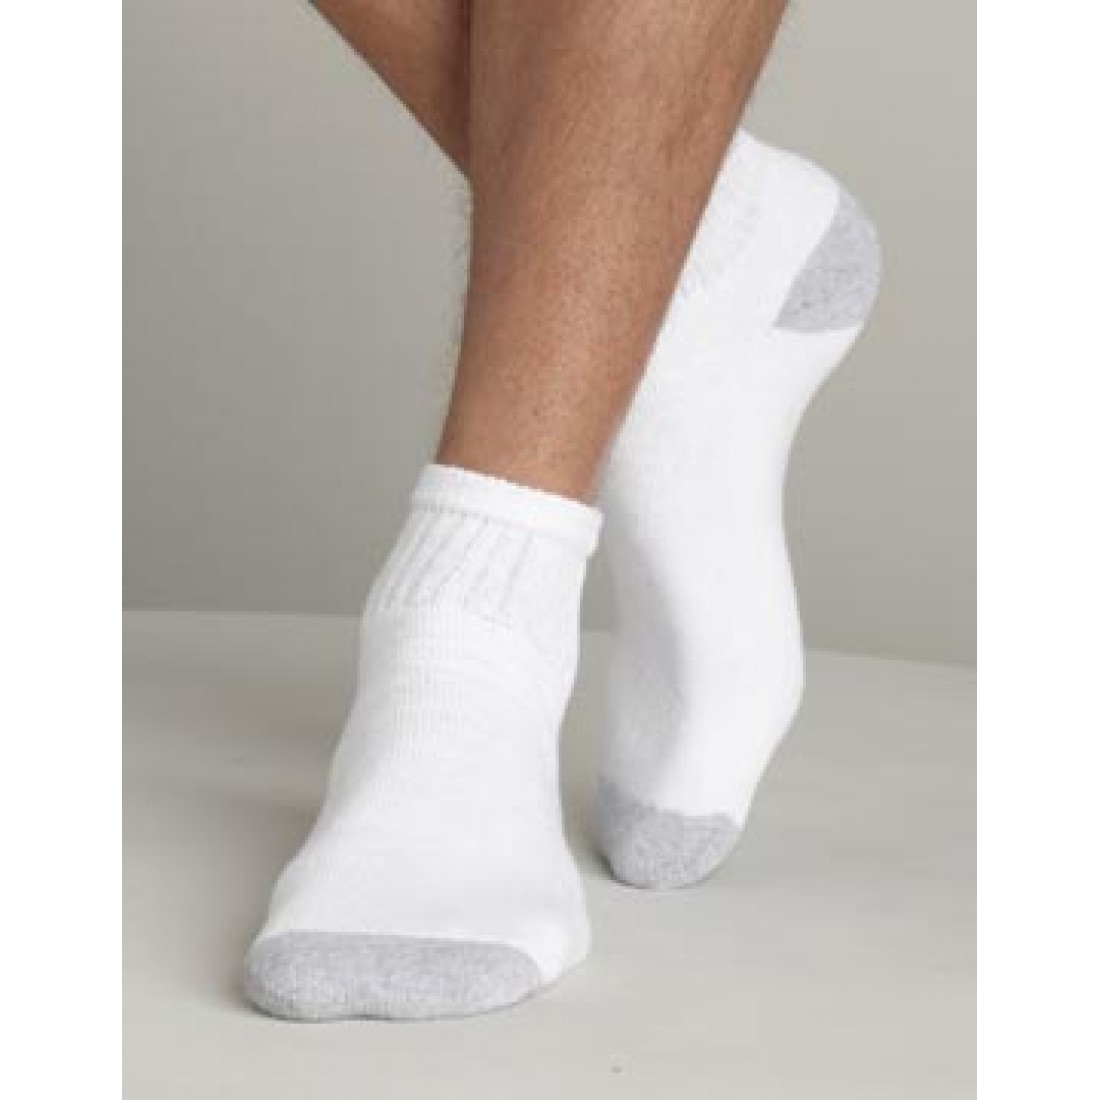 Белые носочки видео. Lindner Socks носки мужские. Белые носки. Белые носки мужские. Носки мужские белые короткие.